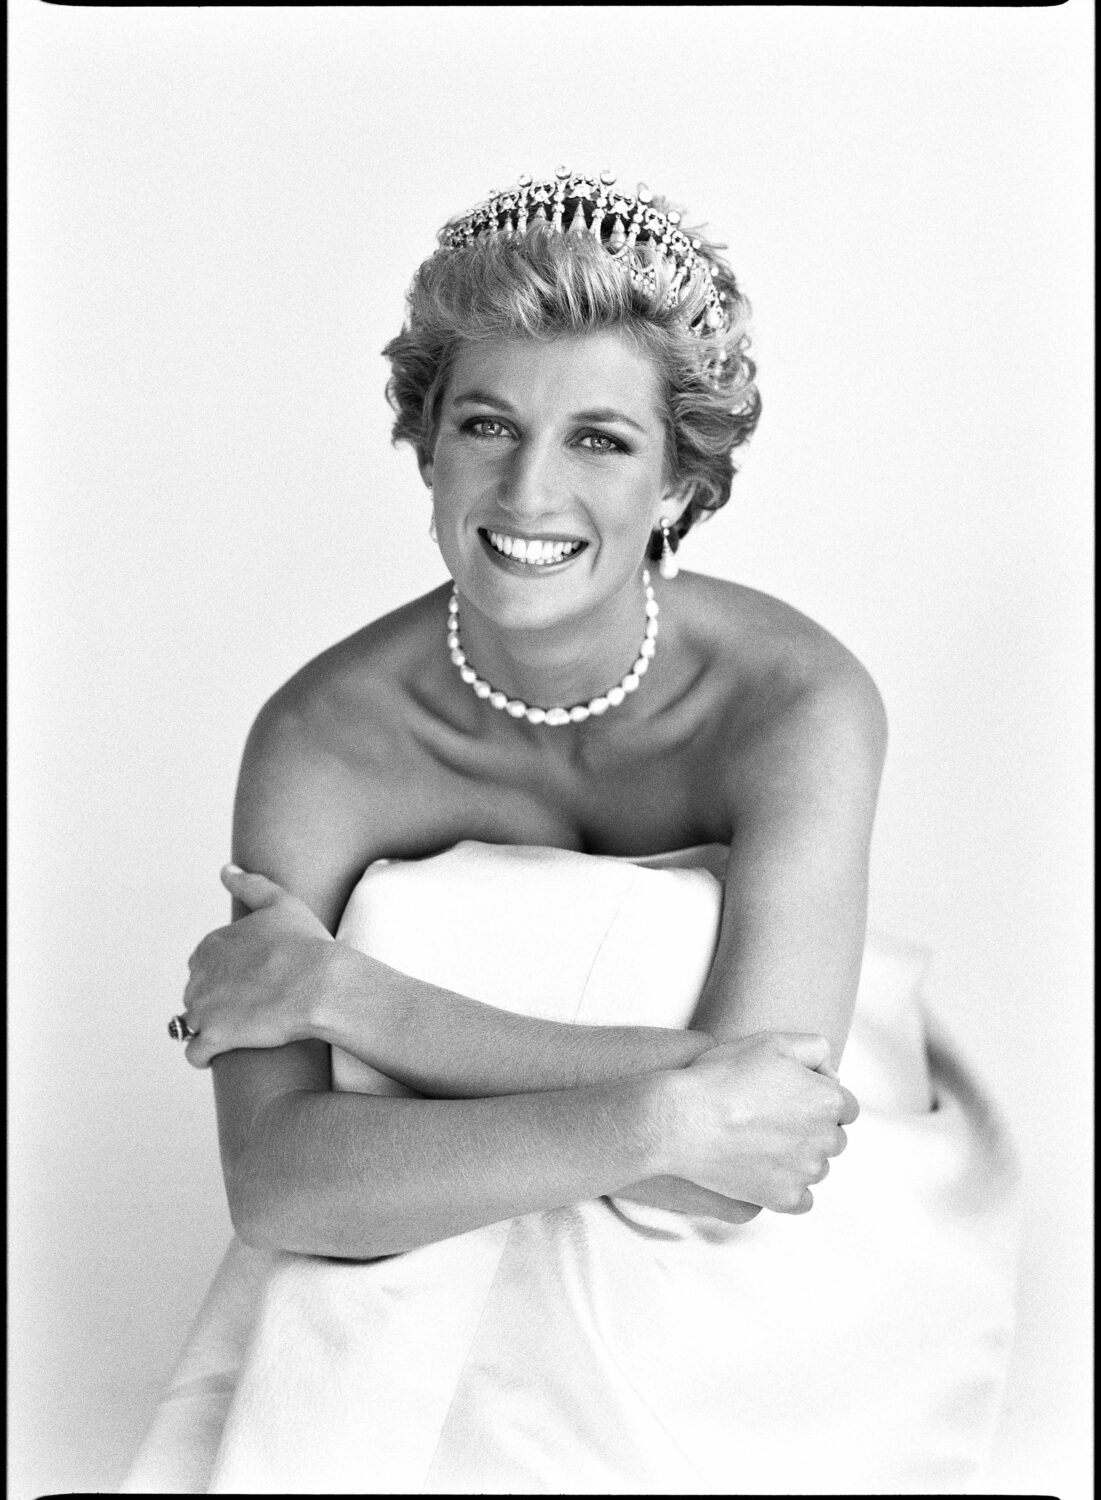 Patrick Demarchelier: Princess Diana